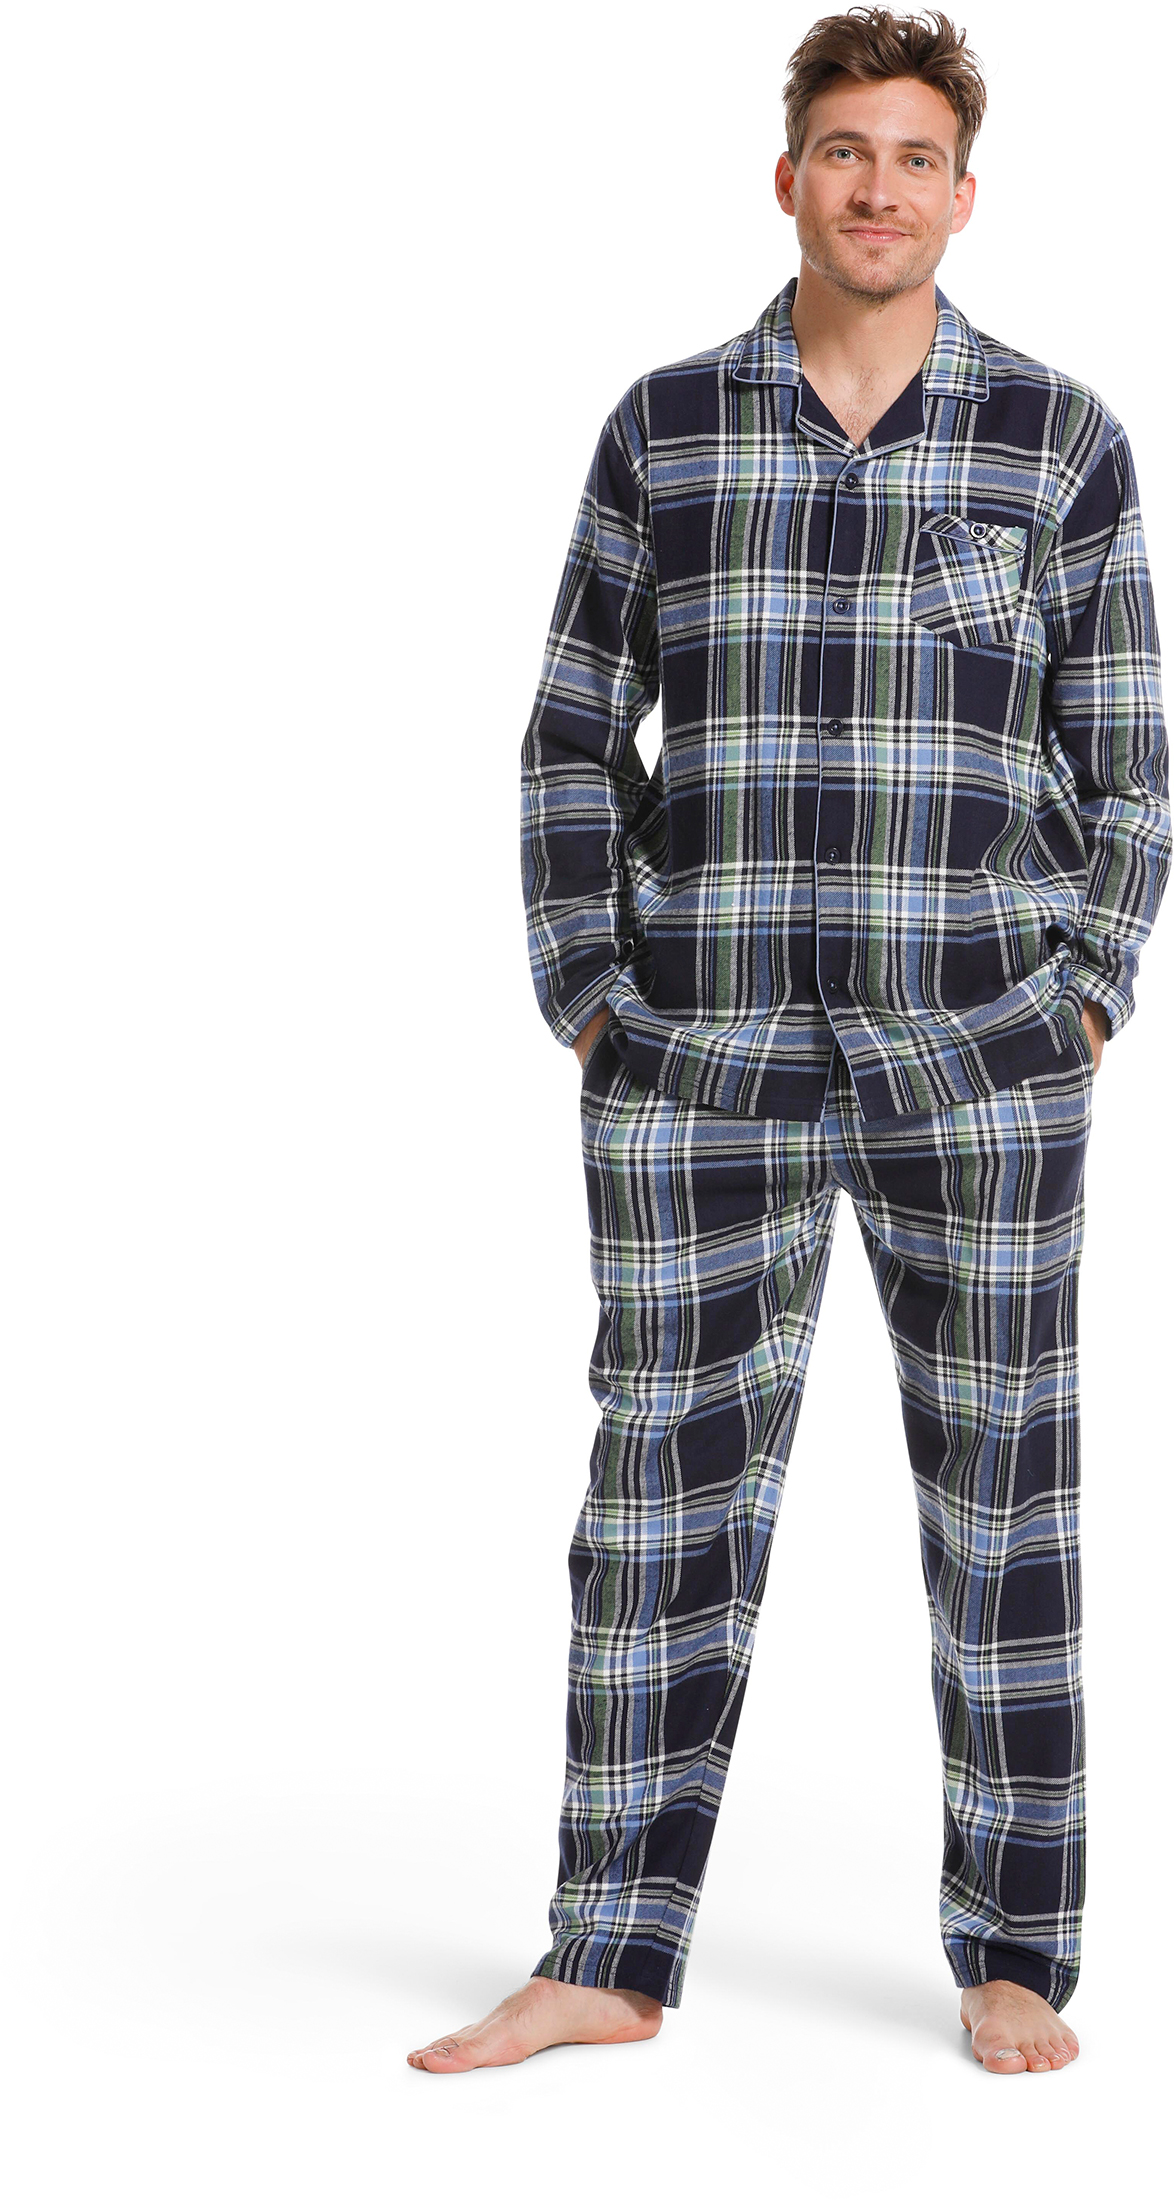 Pastunette heren pyjama flanel 23222-620-6 - Blauw - S/48